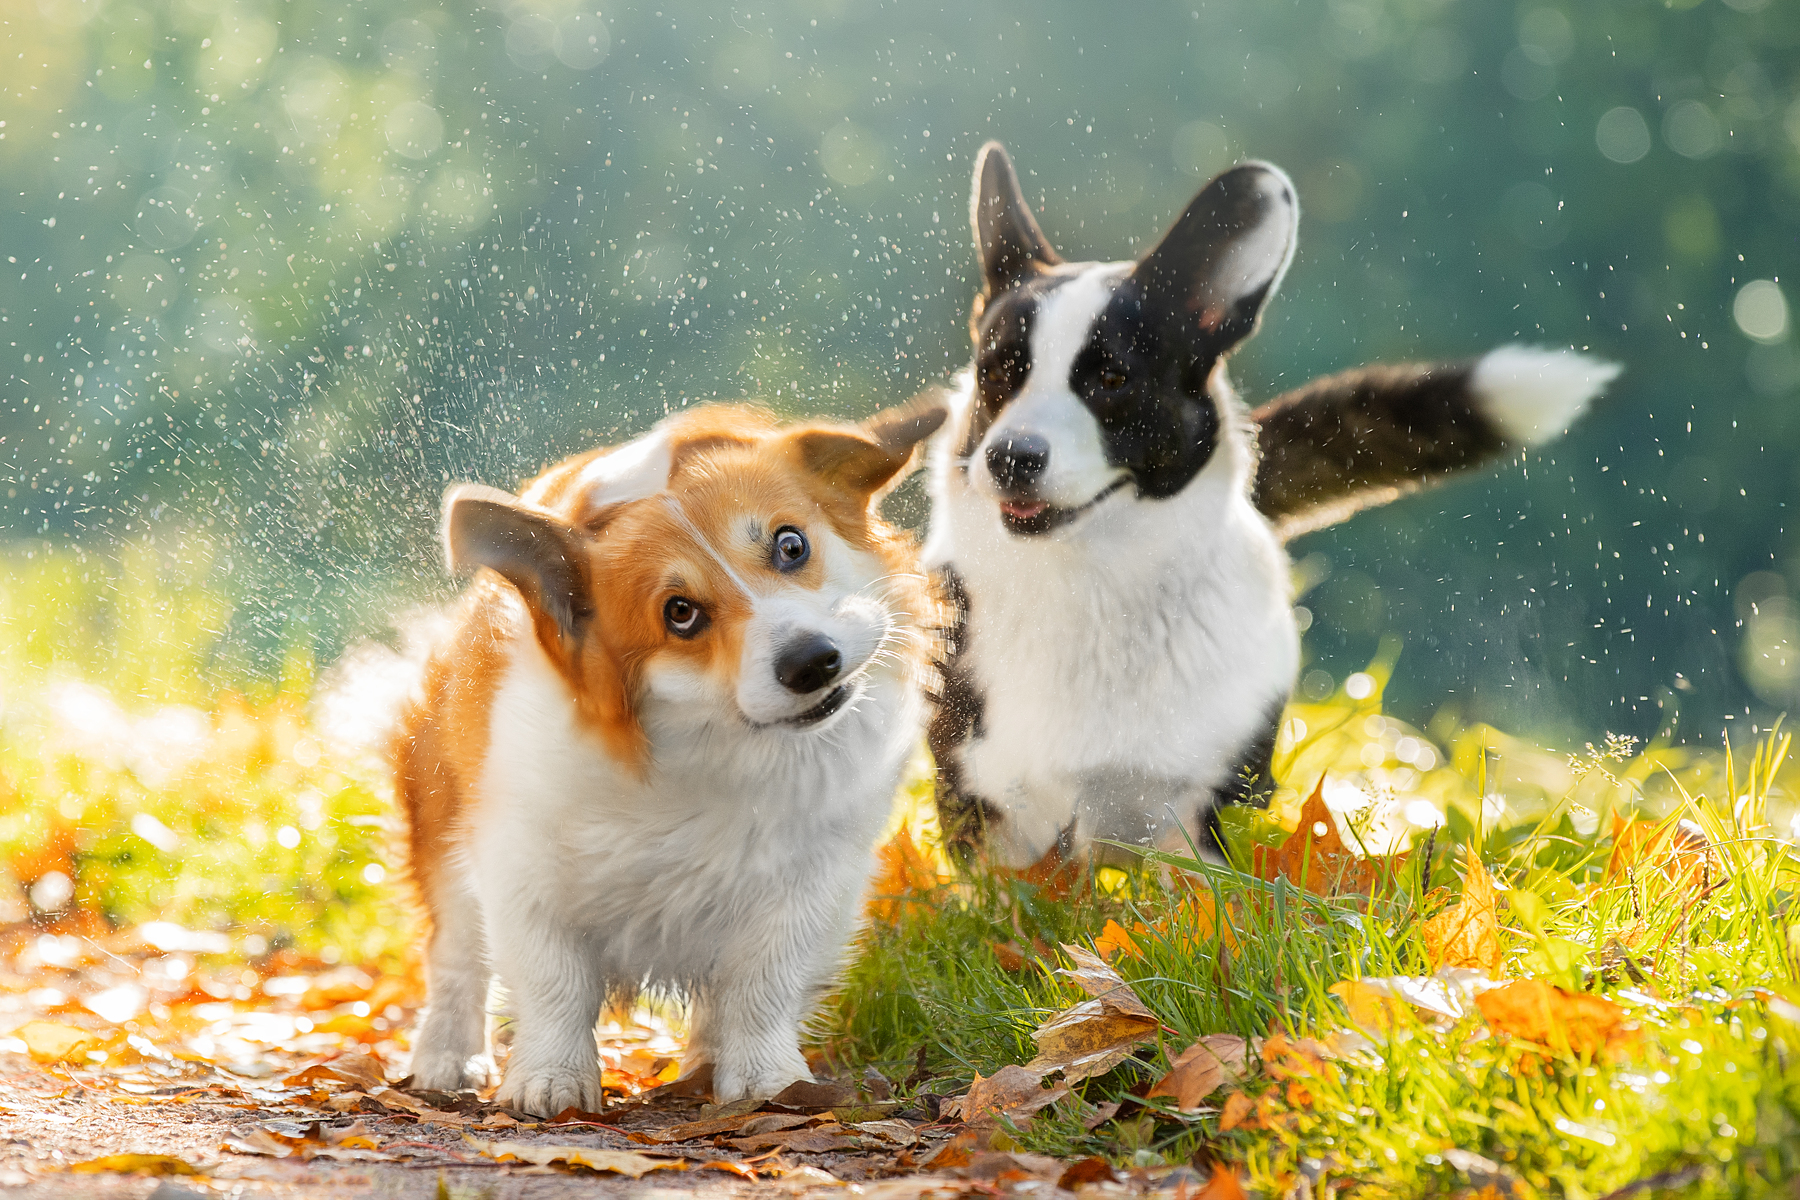 Фото Два щенка вельш-корги на траве и дорожке с осенними листьями, фотограф Писарева Светлана